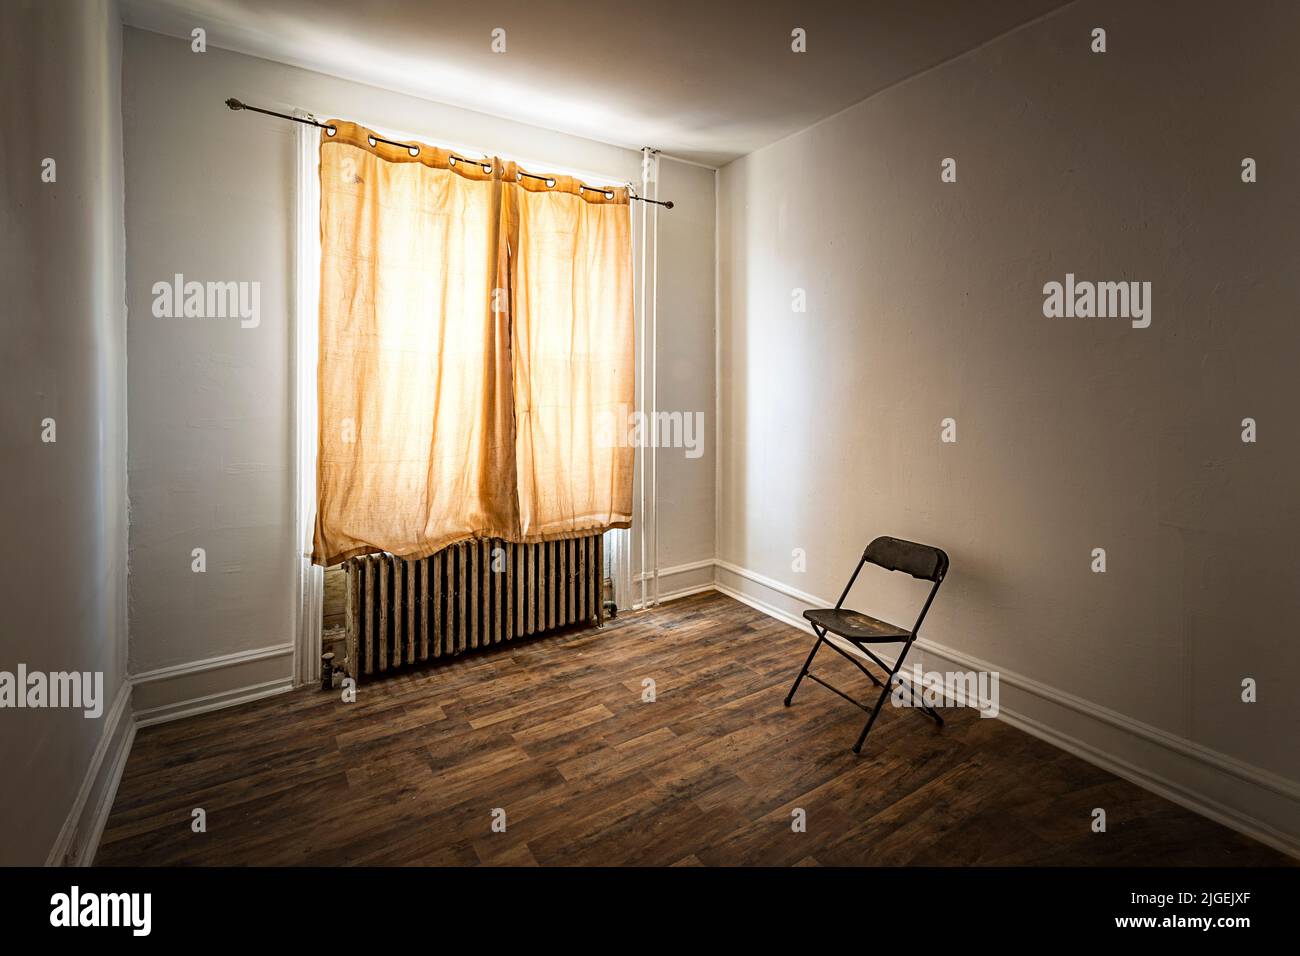 Cortina amarillenta en una habitación ruinosa con silla solitaria Foto de stock